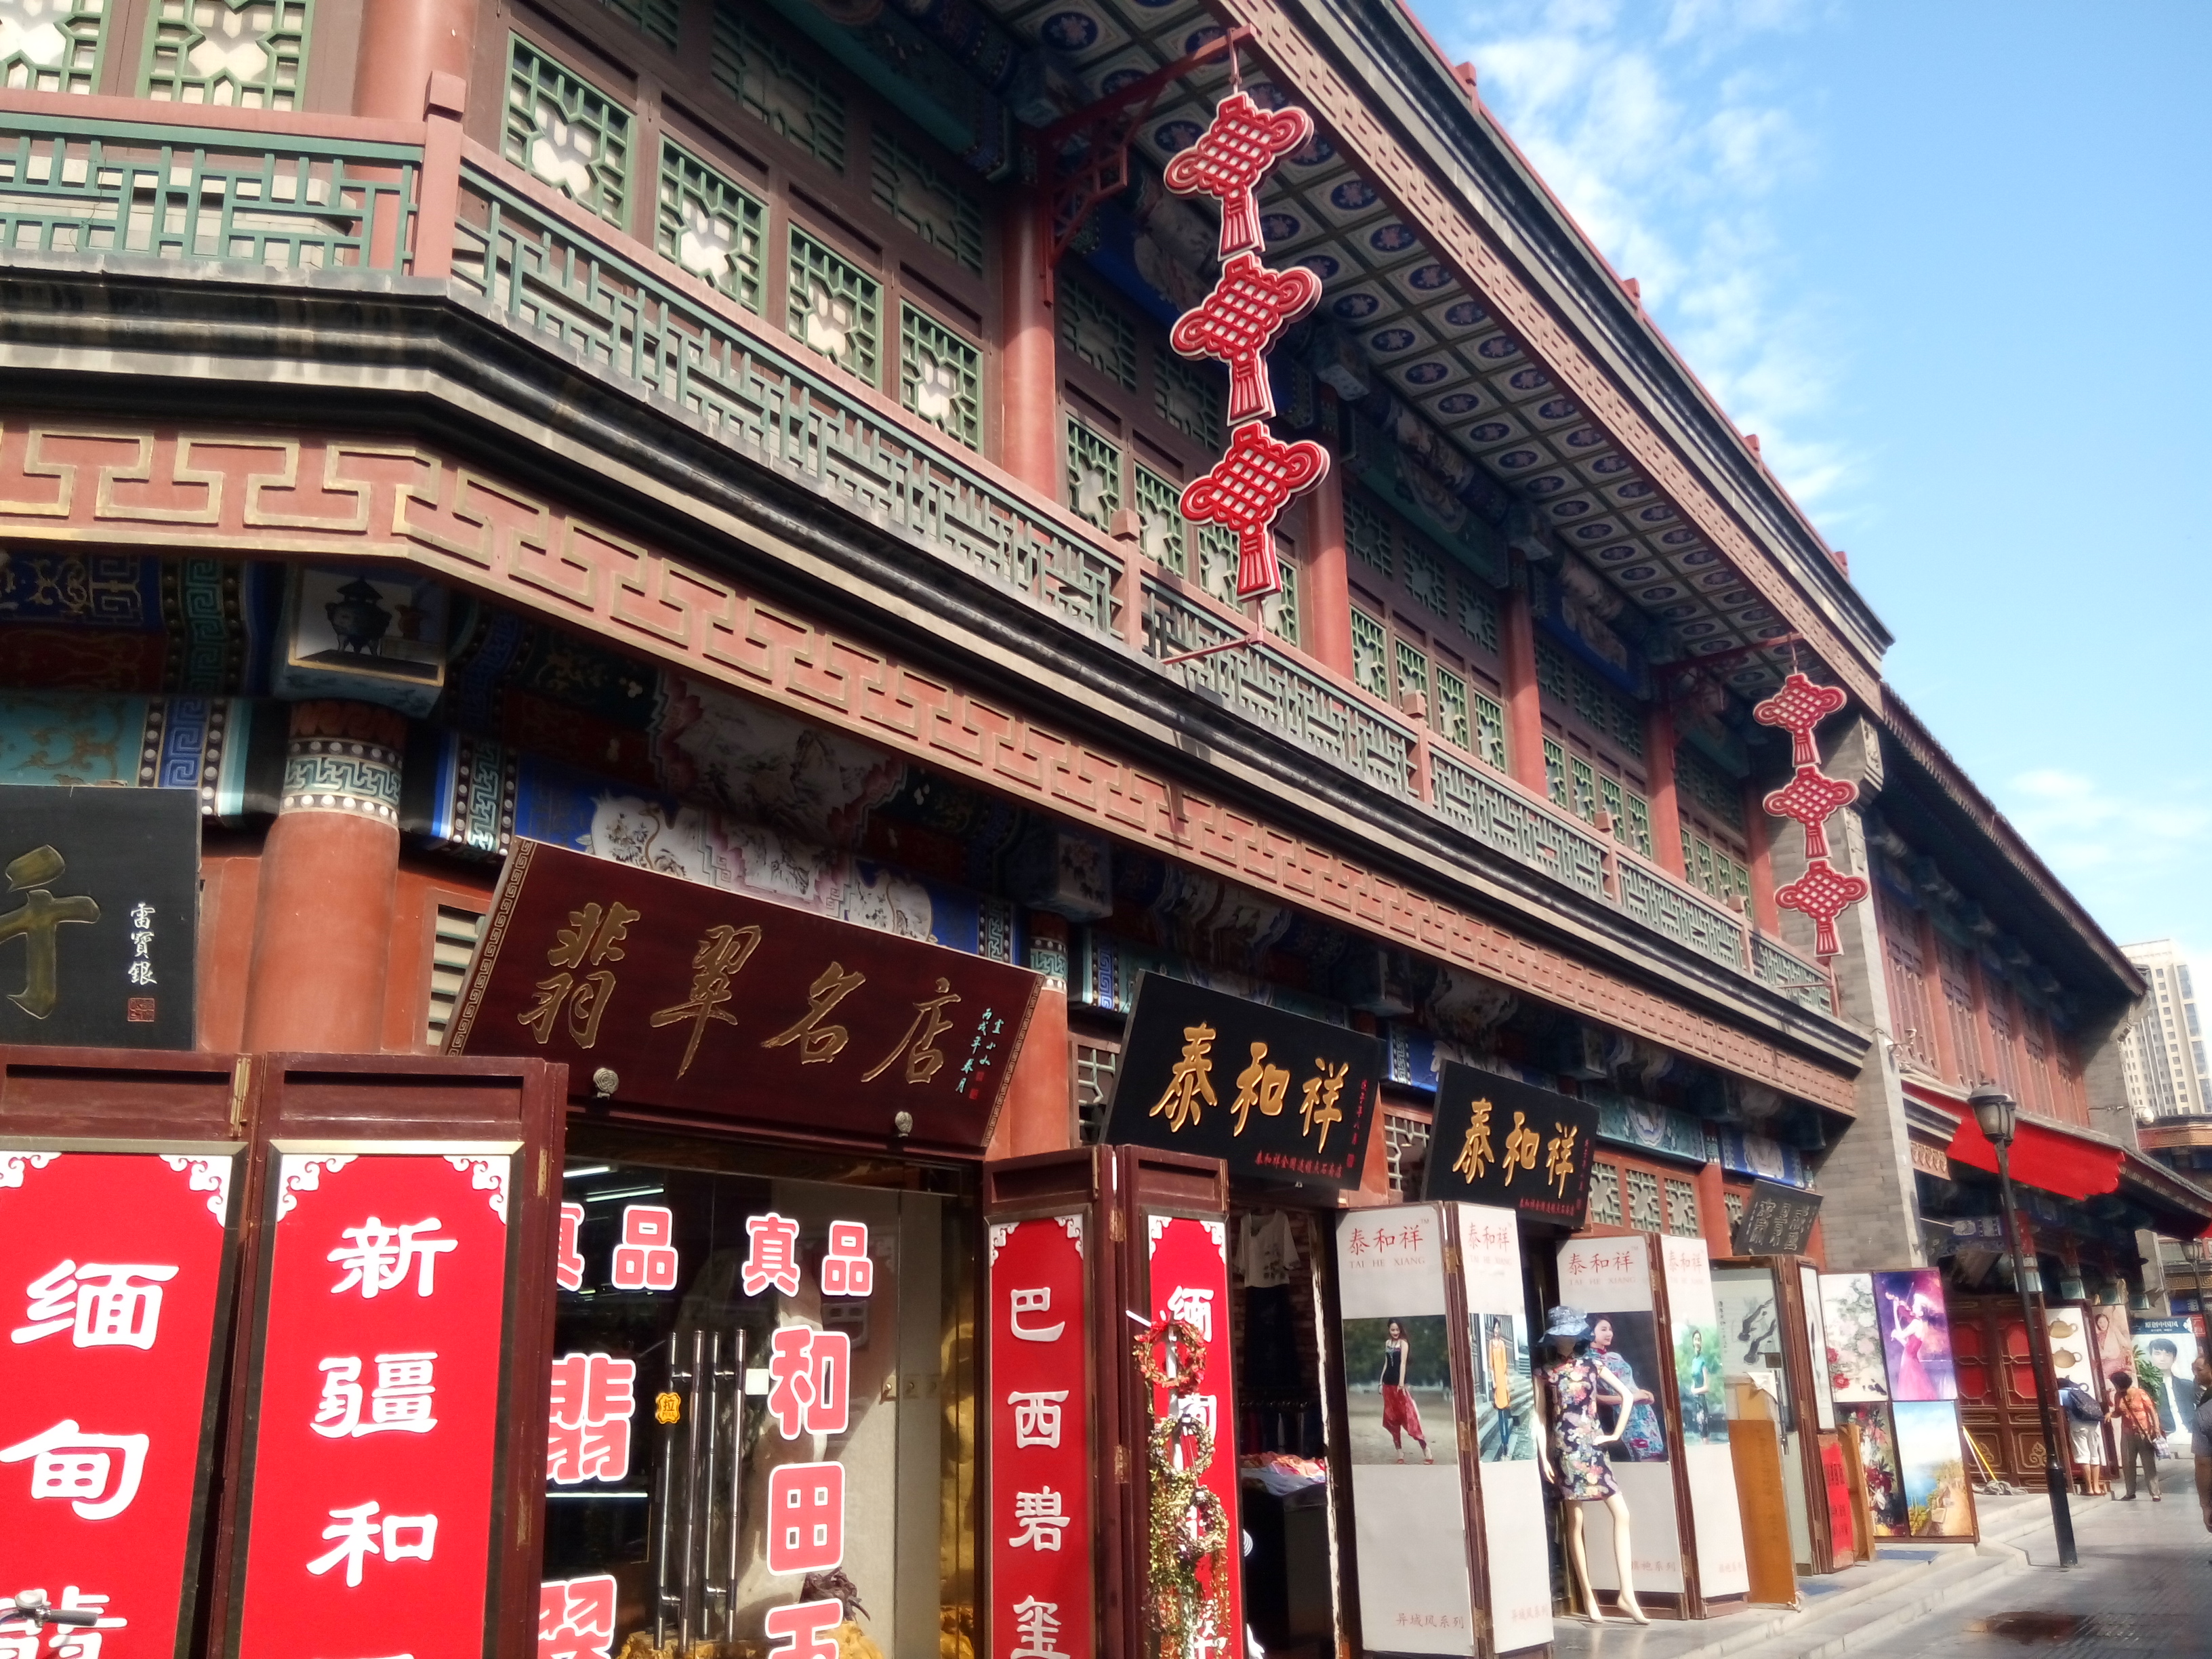 天津5A级景区古文化街随手拍，一起来逛街啦